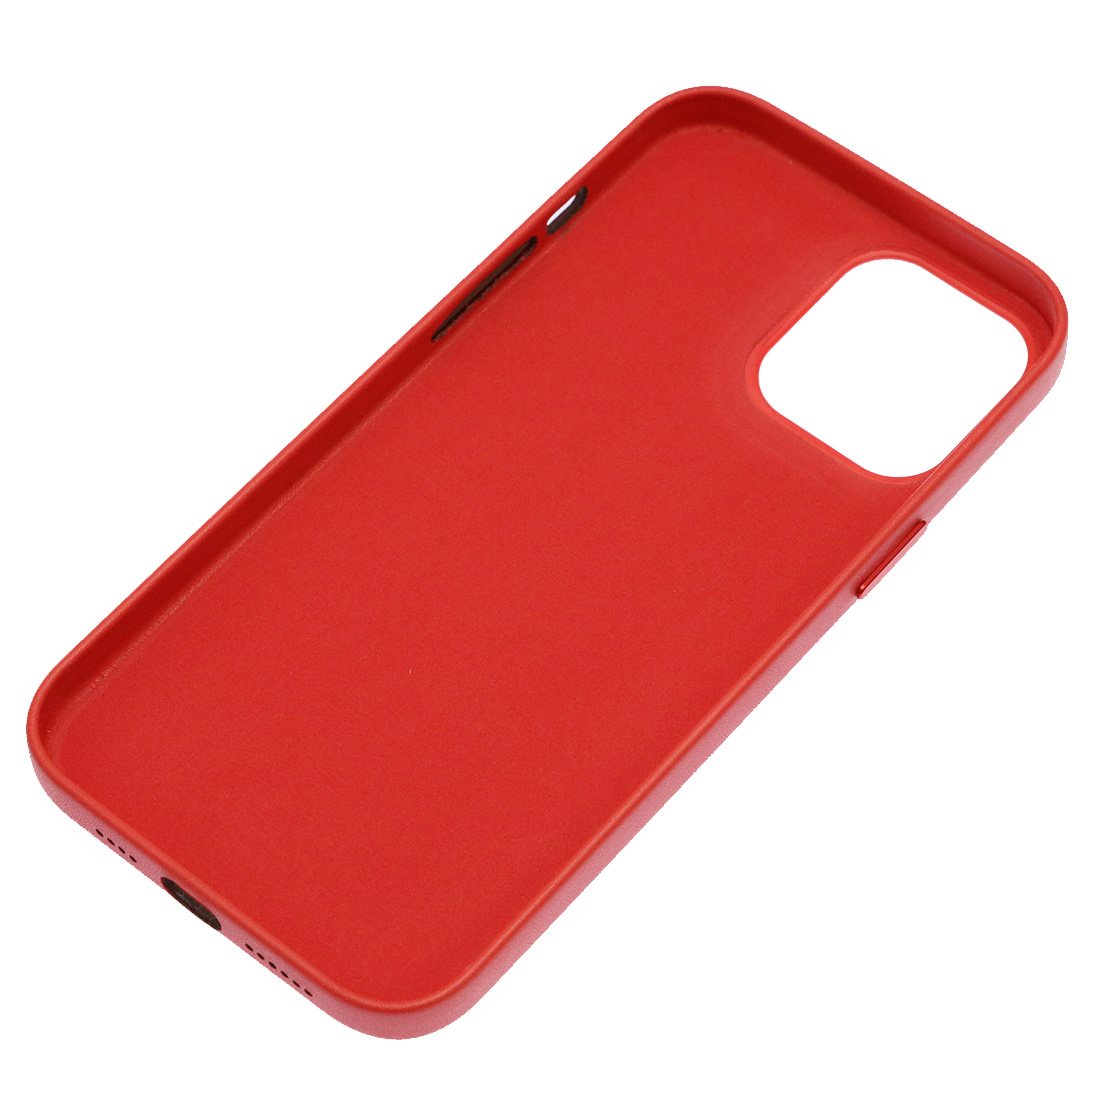 Чехол накладка Leather Case для APPLE iPhone 12 Pro Max, силикон, бархат, экокожа, цвет красный